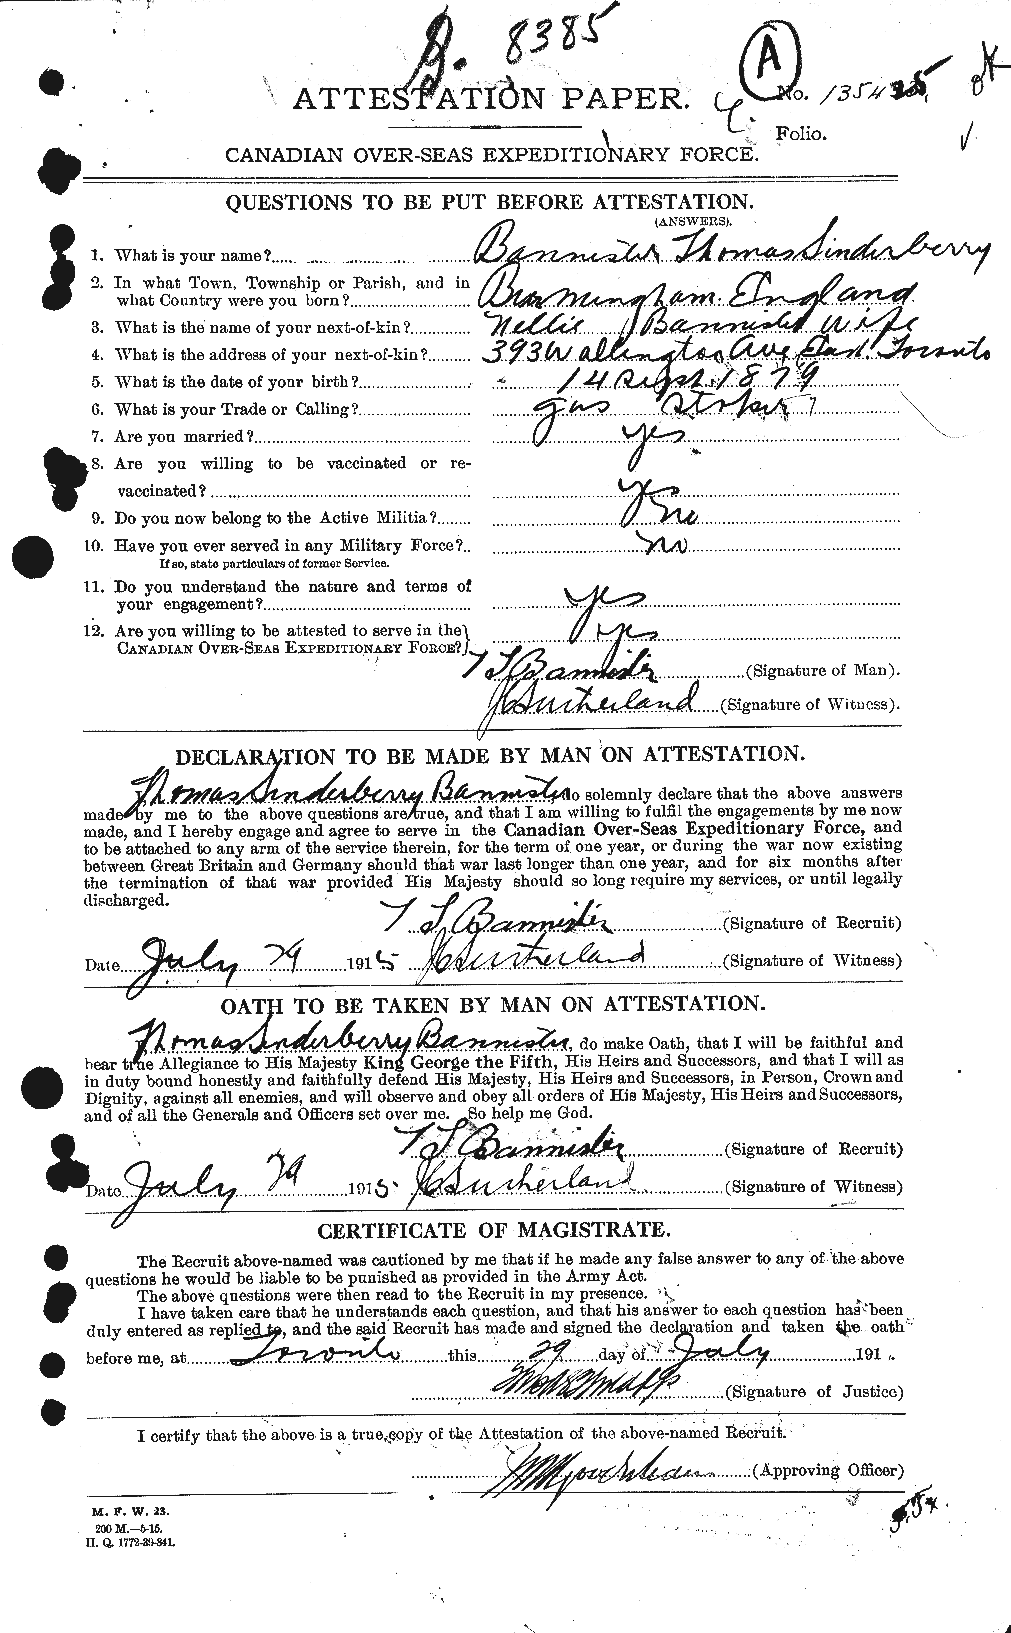 Dossiers du Personnel de la Première Guerre mondiale - CEC 224759a